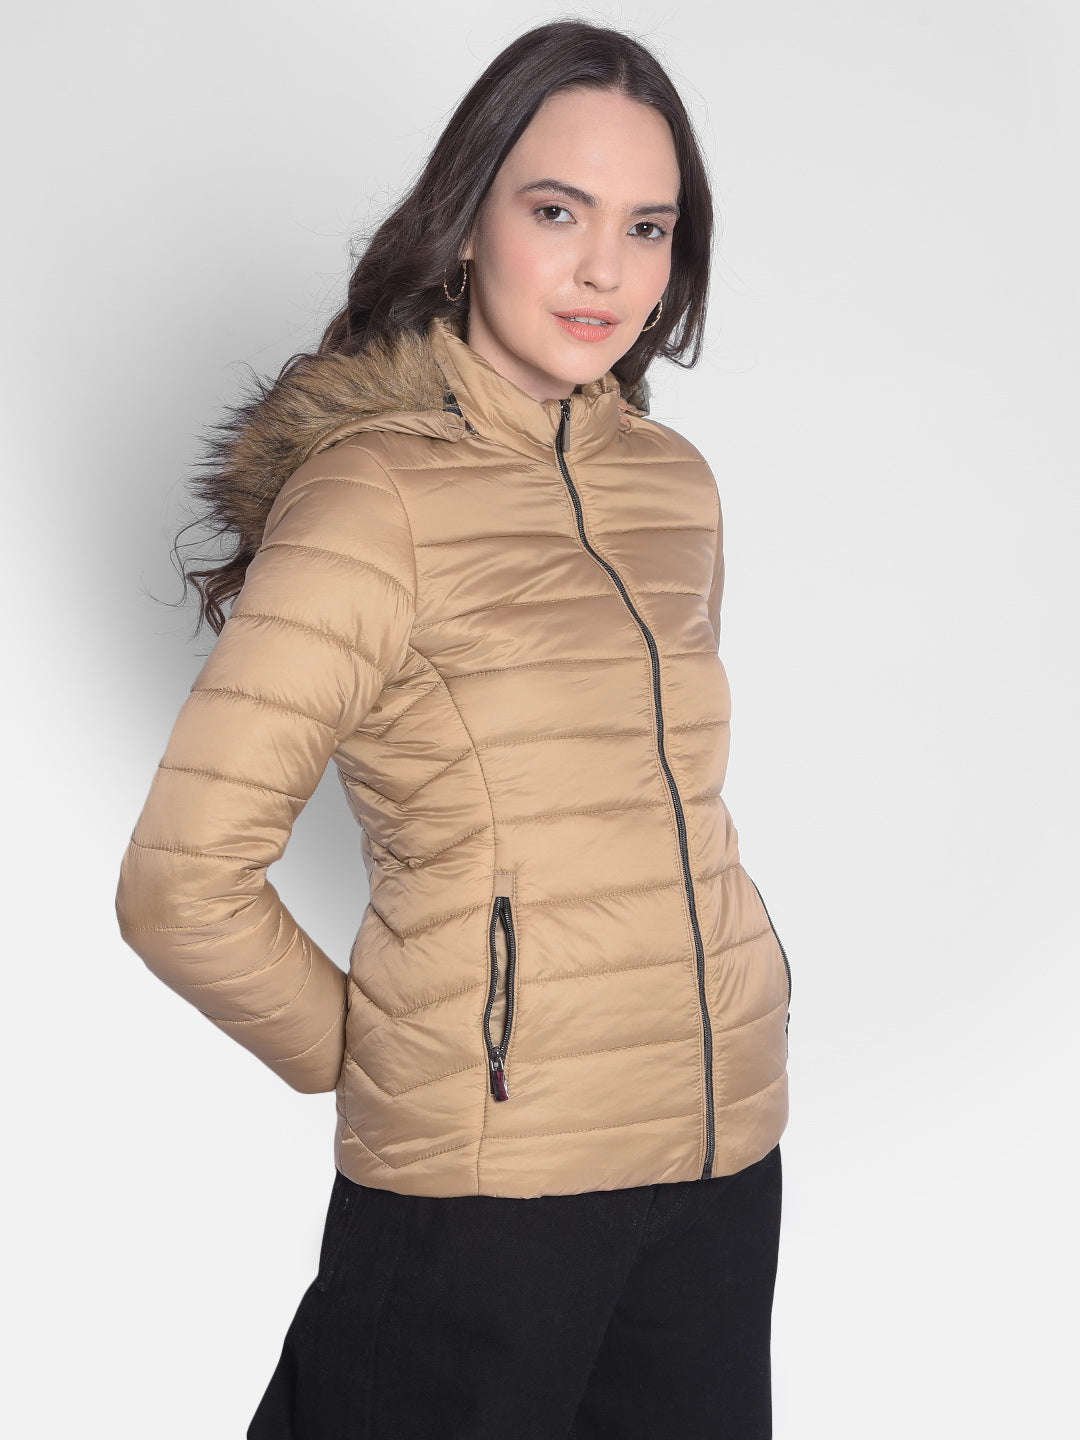 Beige Hooded Jacket With Faux Fur Detail-Women Jackets-Crimsoune Club